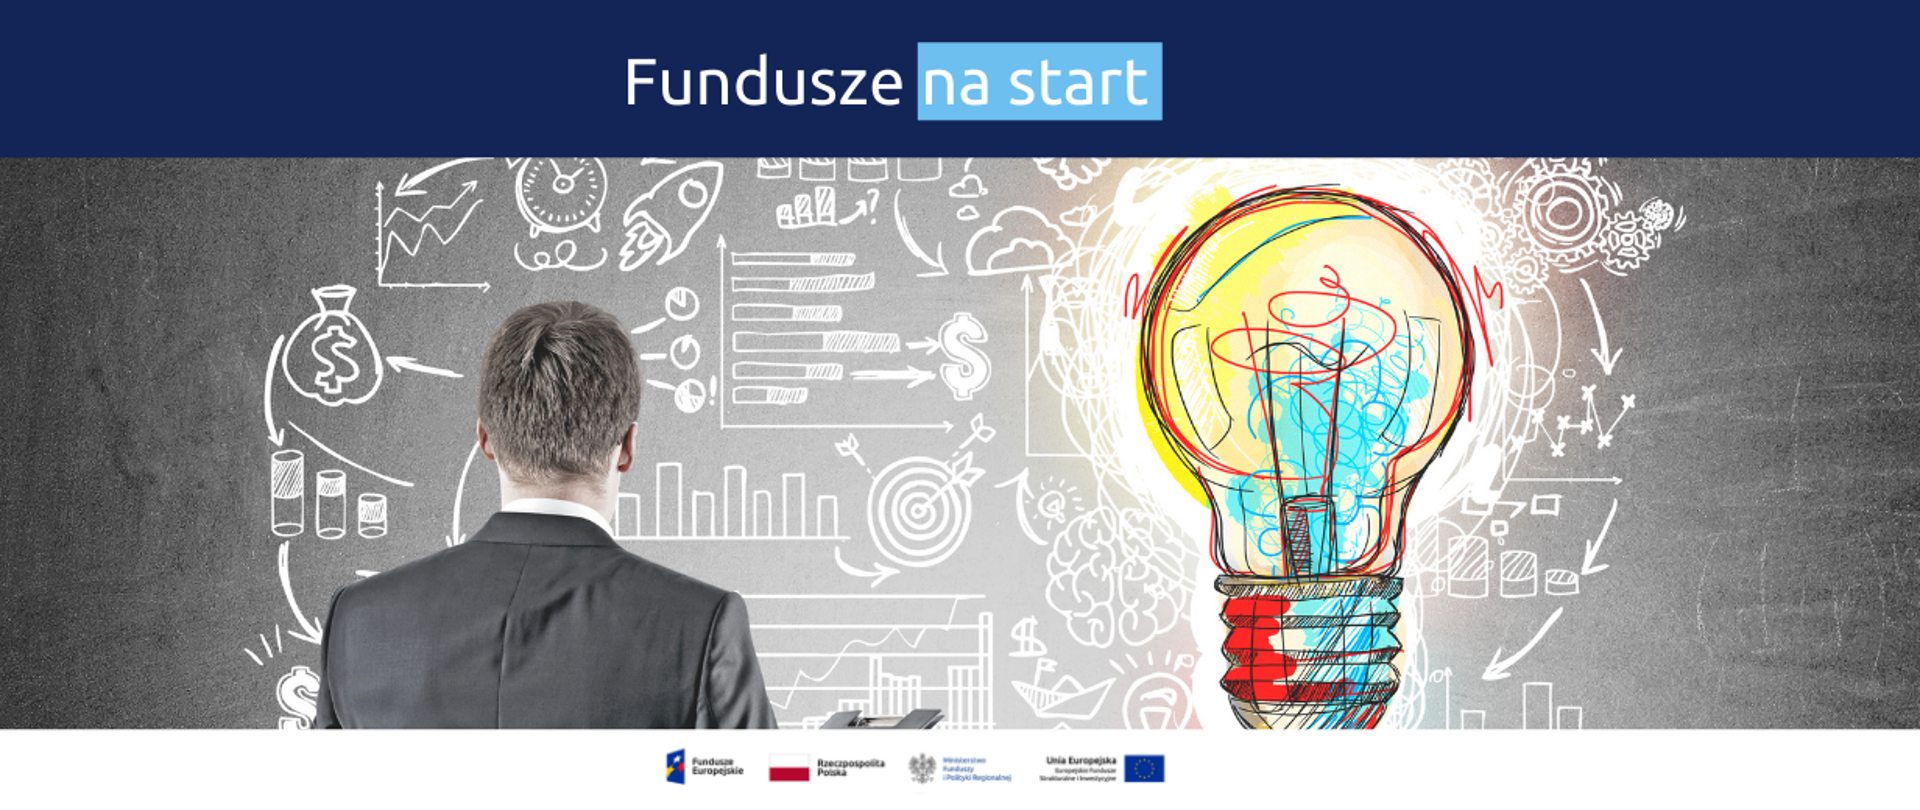 Na grafice napis: "Fundusze na start", zdjęcie człowieka stojącego przed tablicą oraz żarówka, a także loga Funduszy Europejskich, Rzeczypospolitej Polskiej, Ministerstwa Funduszy i Polityki Regionalnej i Unii Europejskiej